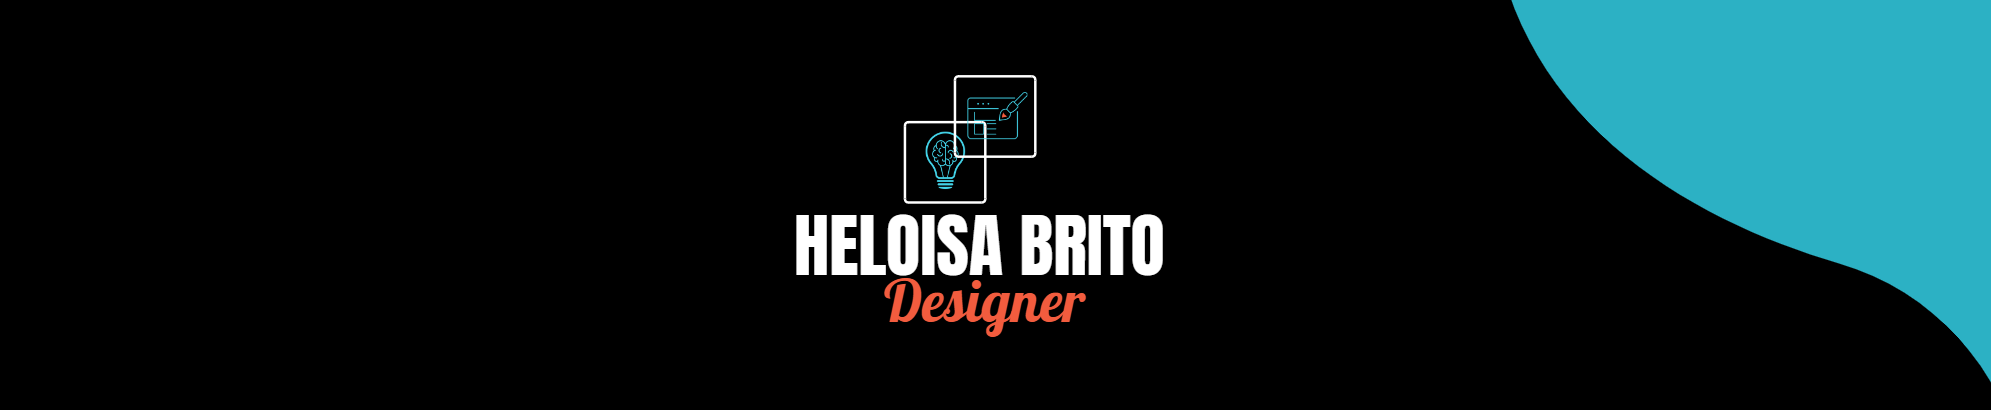 Heloisa Brito's profile banner